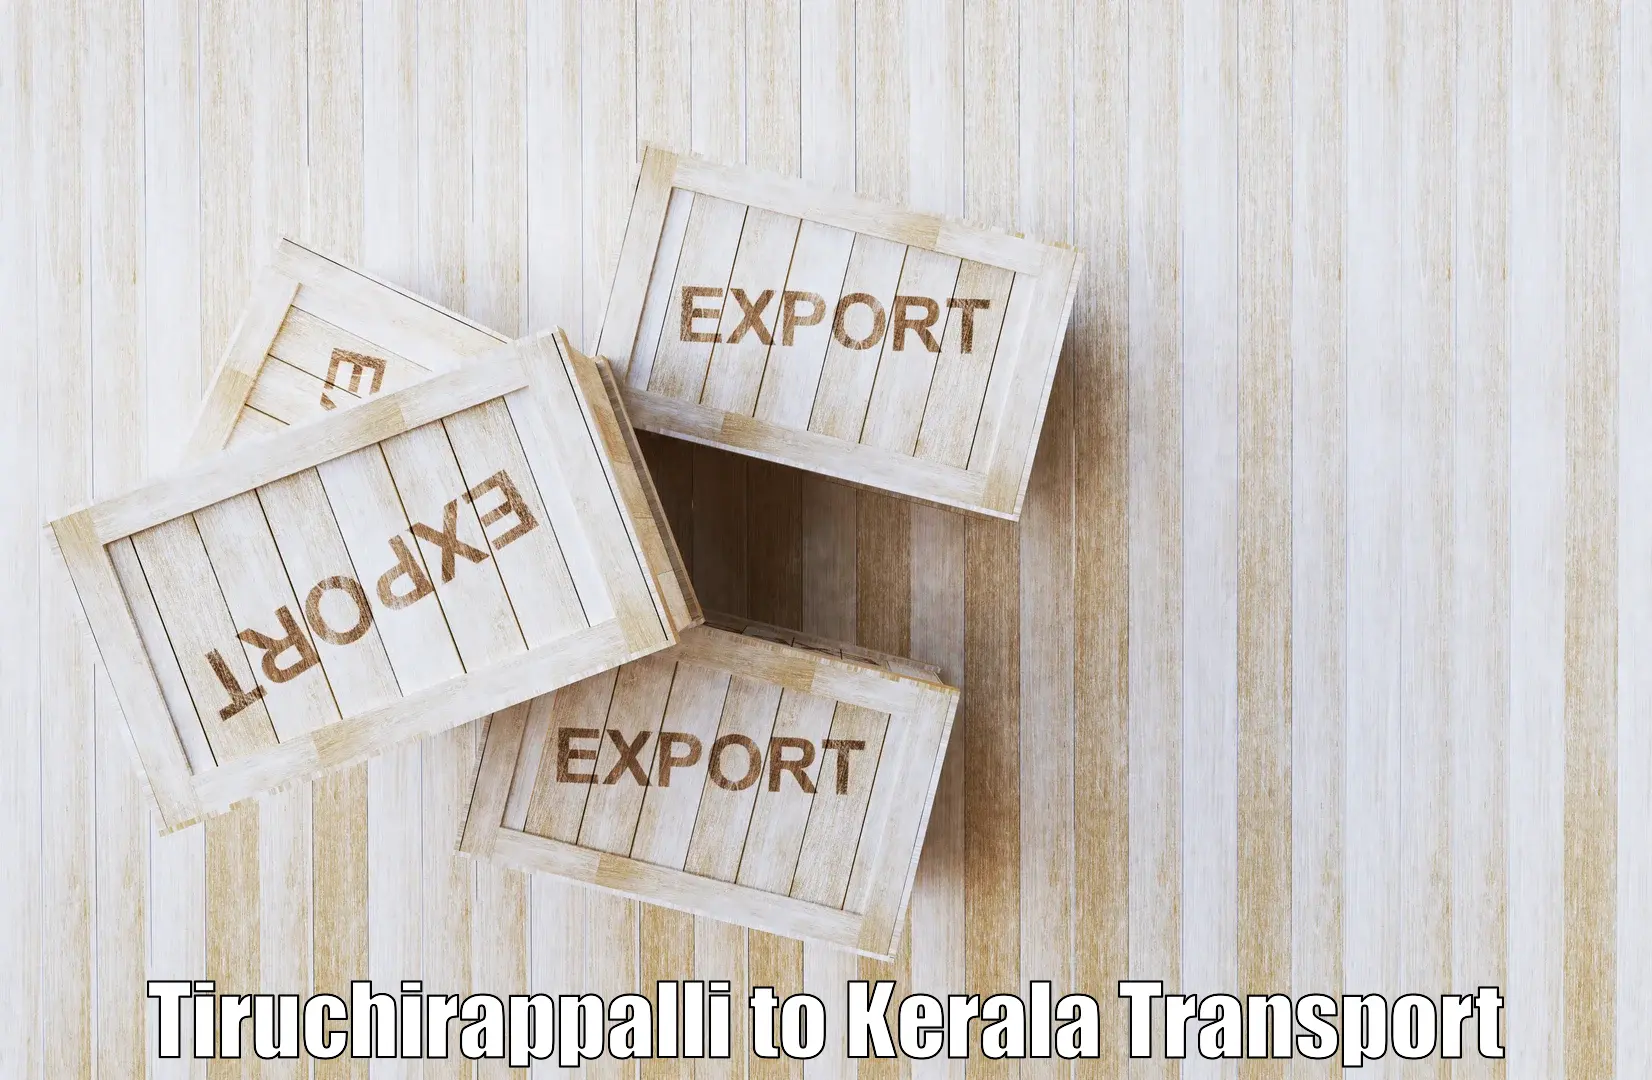 India truck logistics services Tiruchirappalli to Karukachal